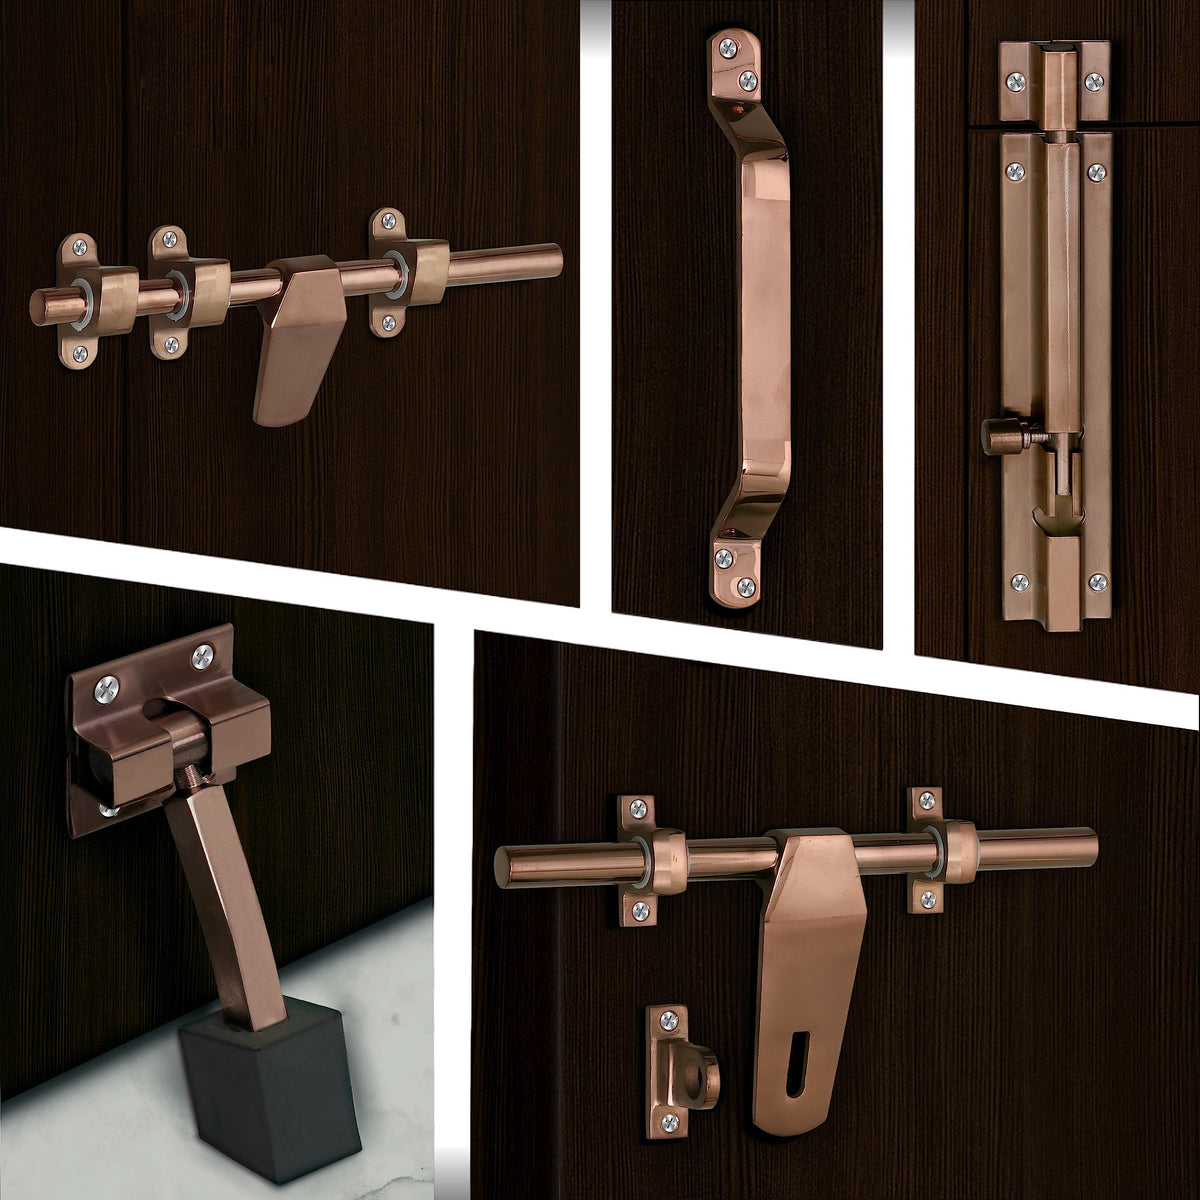 Plantex Stainless Steel Door Kit for Single Door/Door Hardware/Door Accessories (10 inch Al-Drop,8 inch Latch, 8 inch 2 Handles,7 inch Tower Bolt and 4 inch Door Stopper) - (DK-07-PVD Rose Gold)